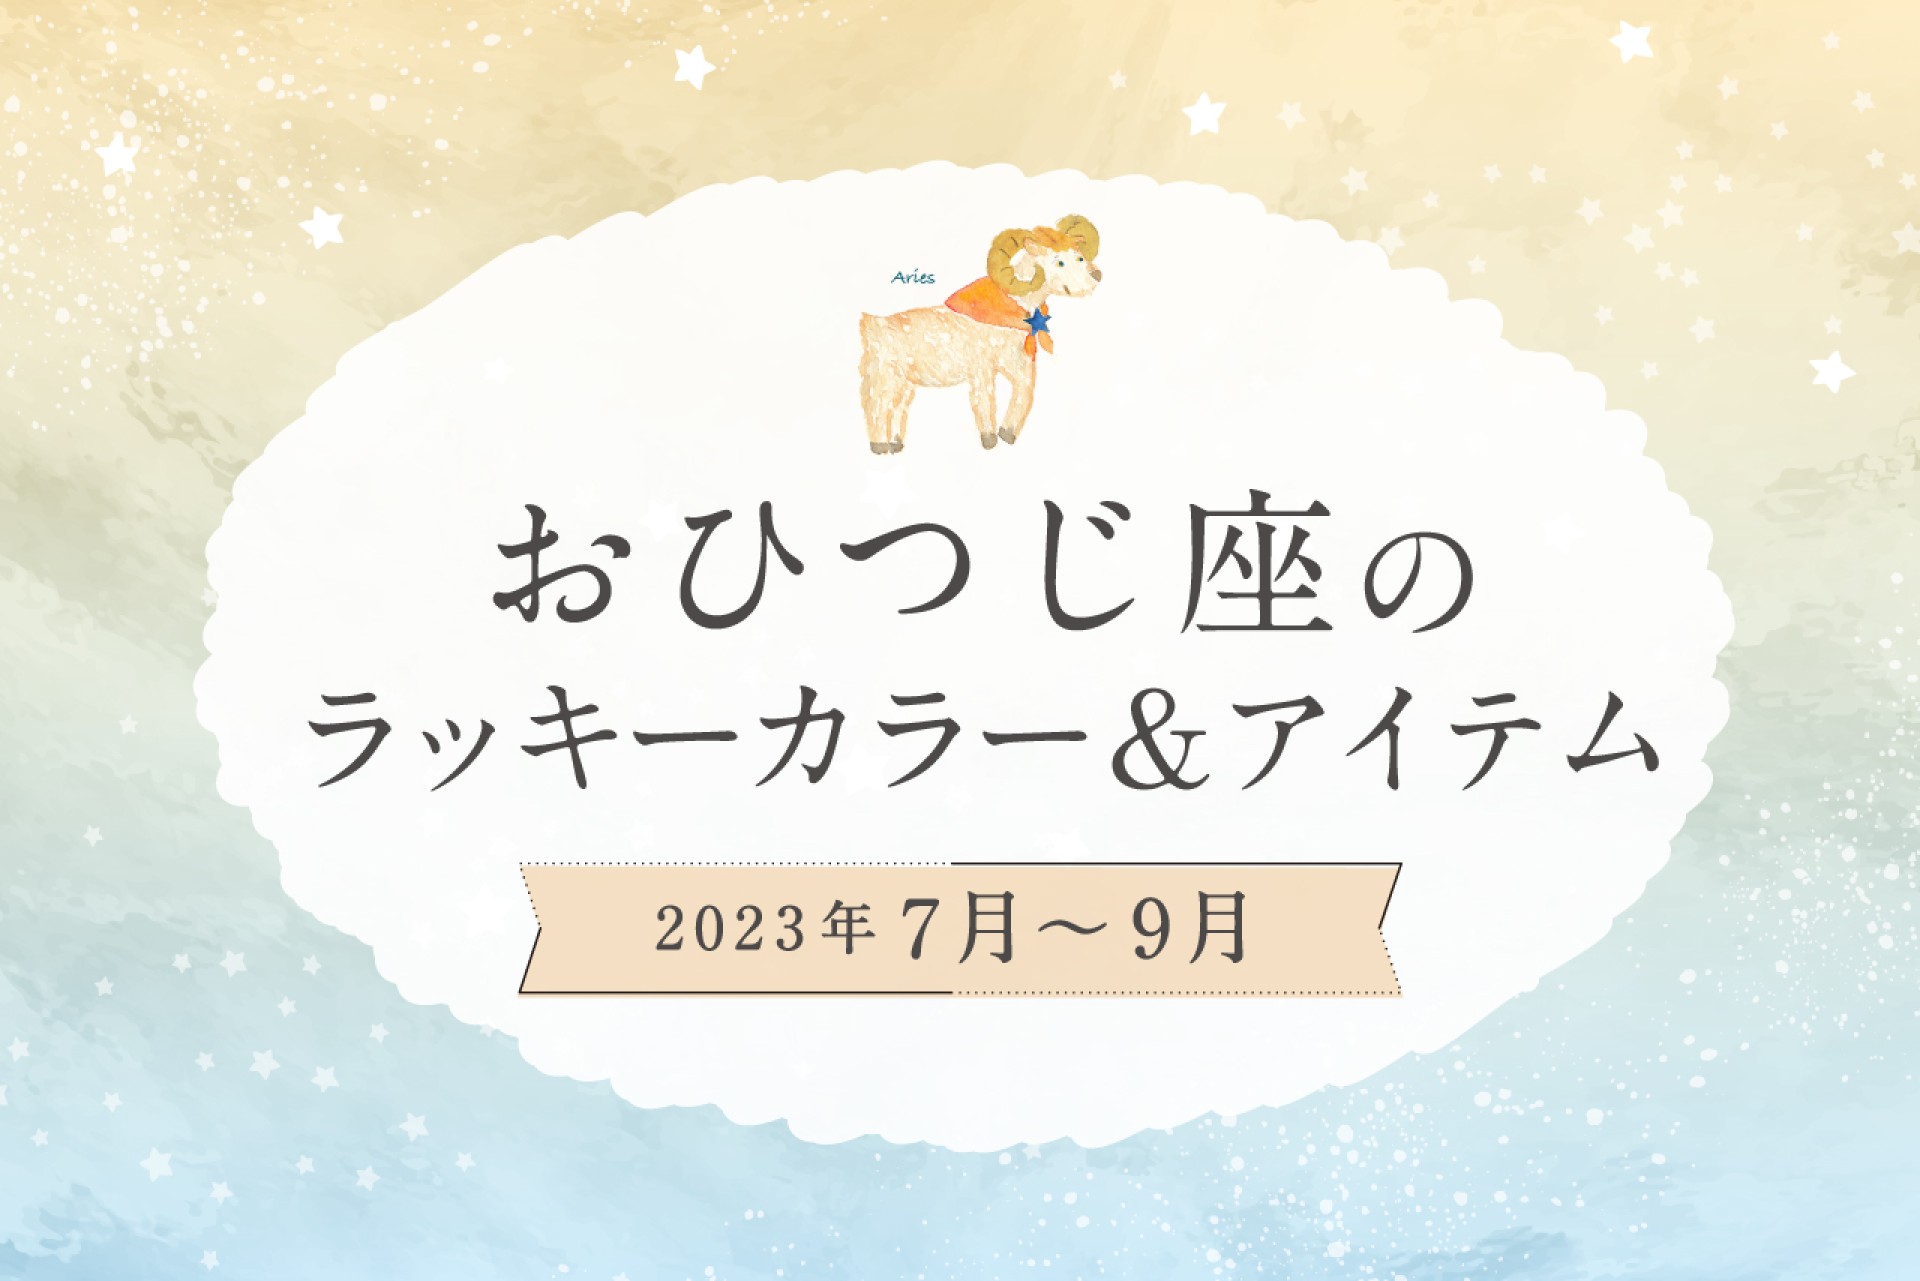 おひつじ座のラッキーカラーとラッキーアイテム【2022年7月・8月・9月】